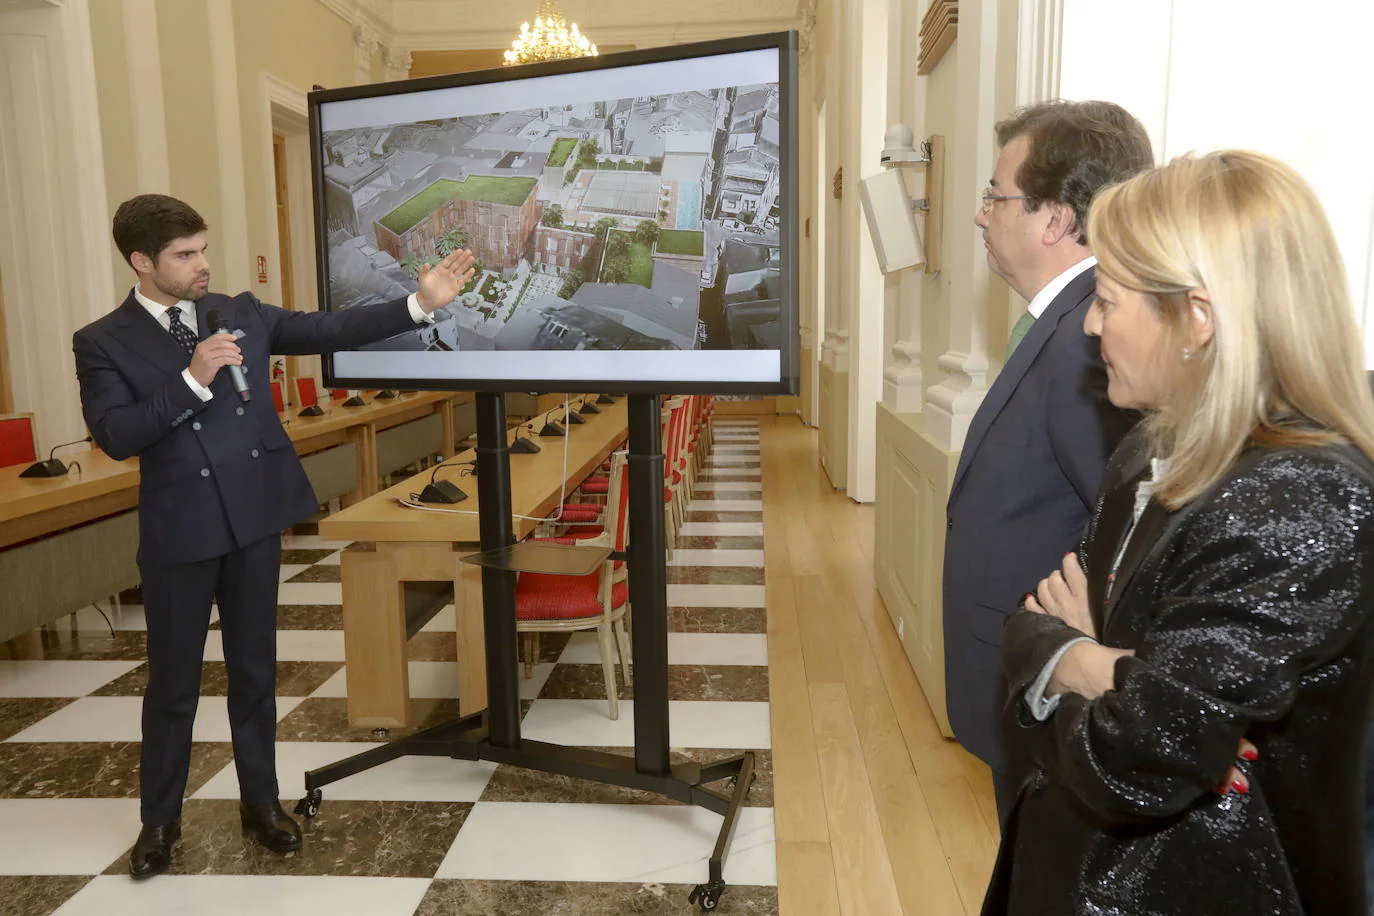 Año 2018. Fernando Palazuelo Barroso, sobrino-nieto del artista, presenta en Cáceres su proyecto para convertir el cacereño Palacio de Godoy en un hotel de cinco estrellas.